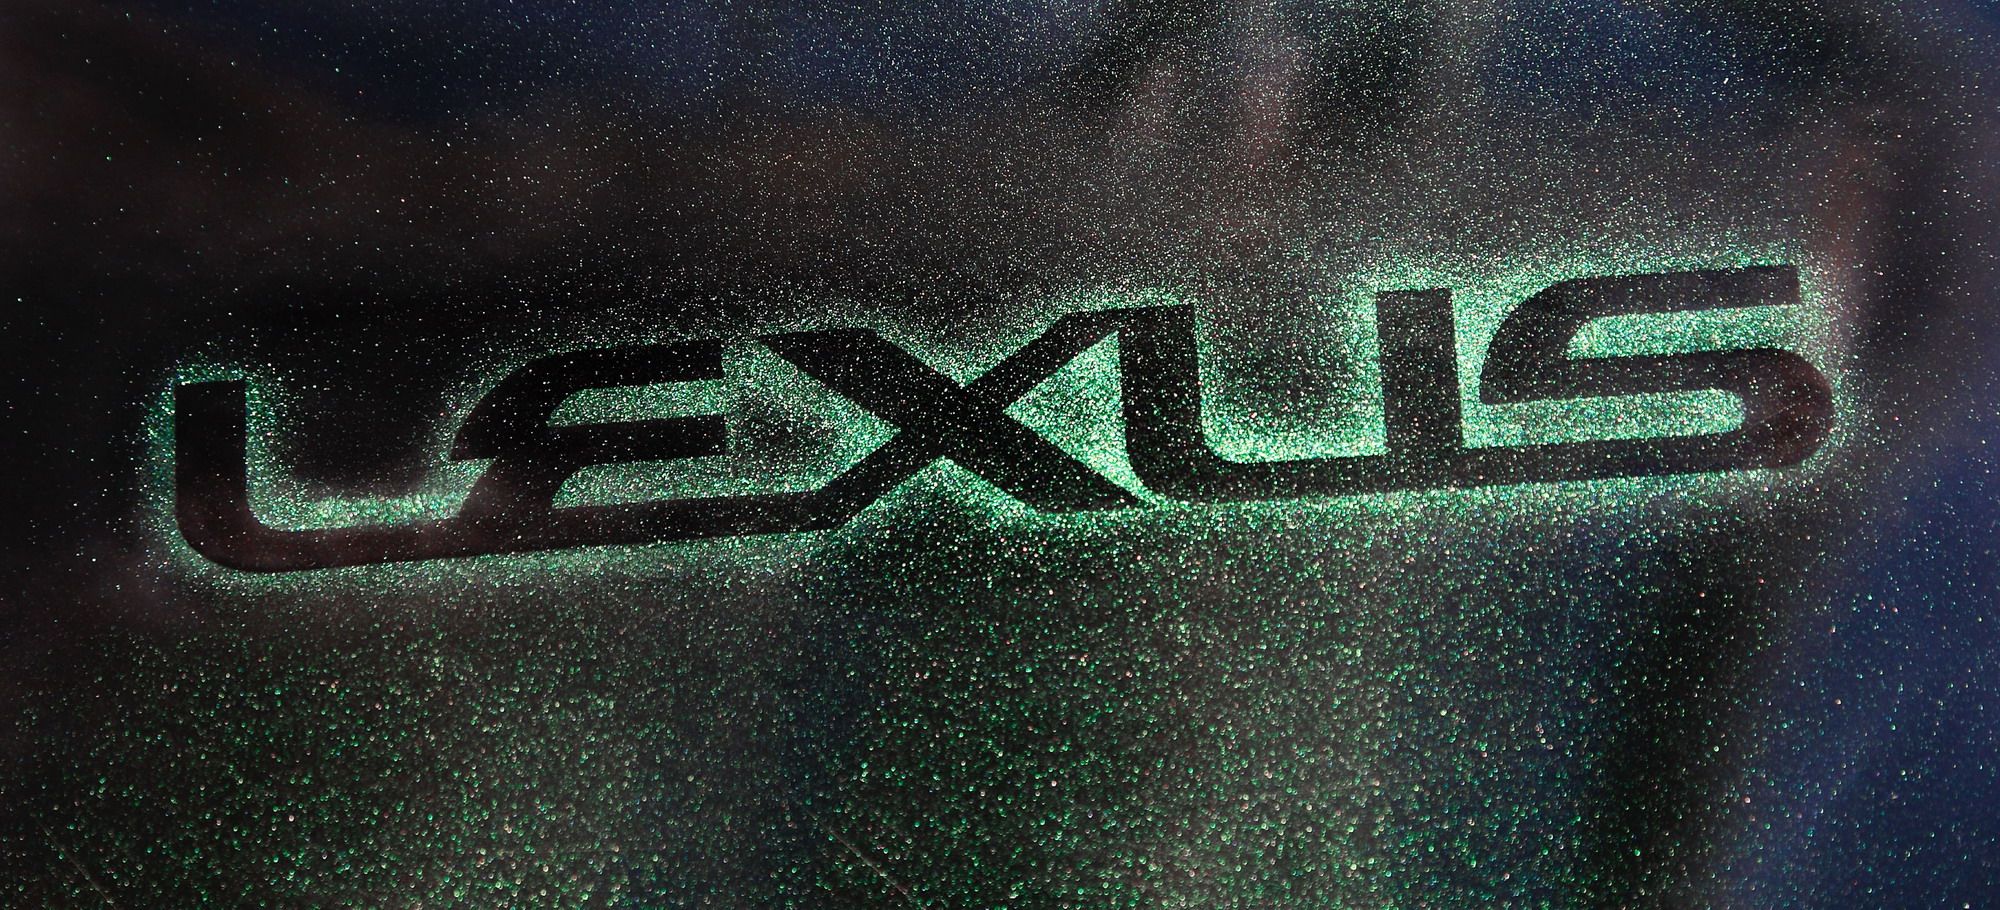 2010 Lexus RX 450h by Paul Tolson of EST